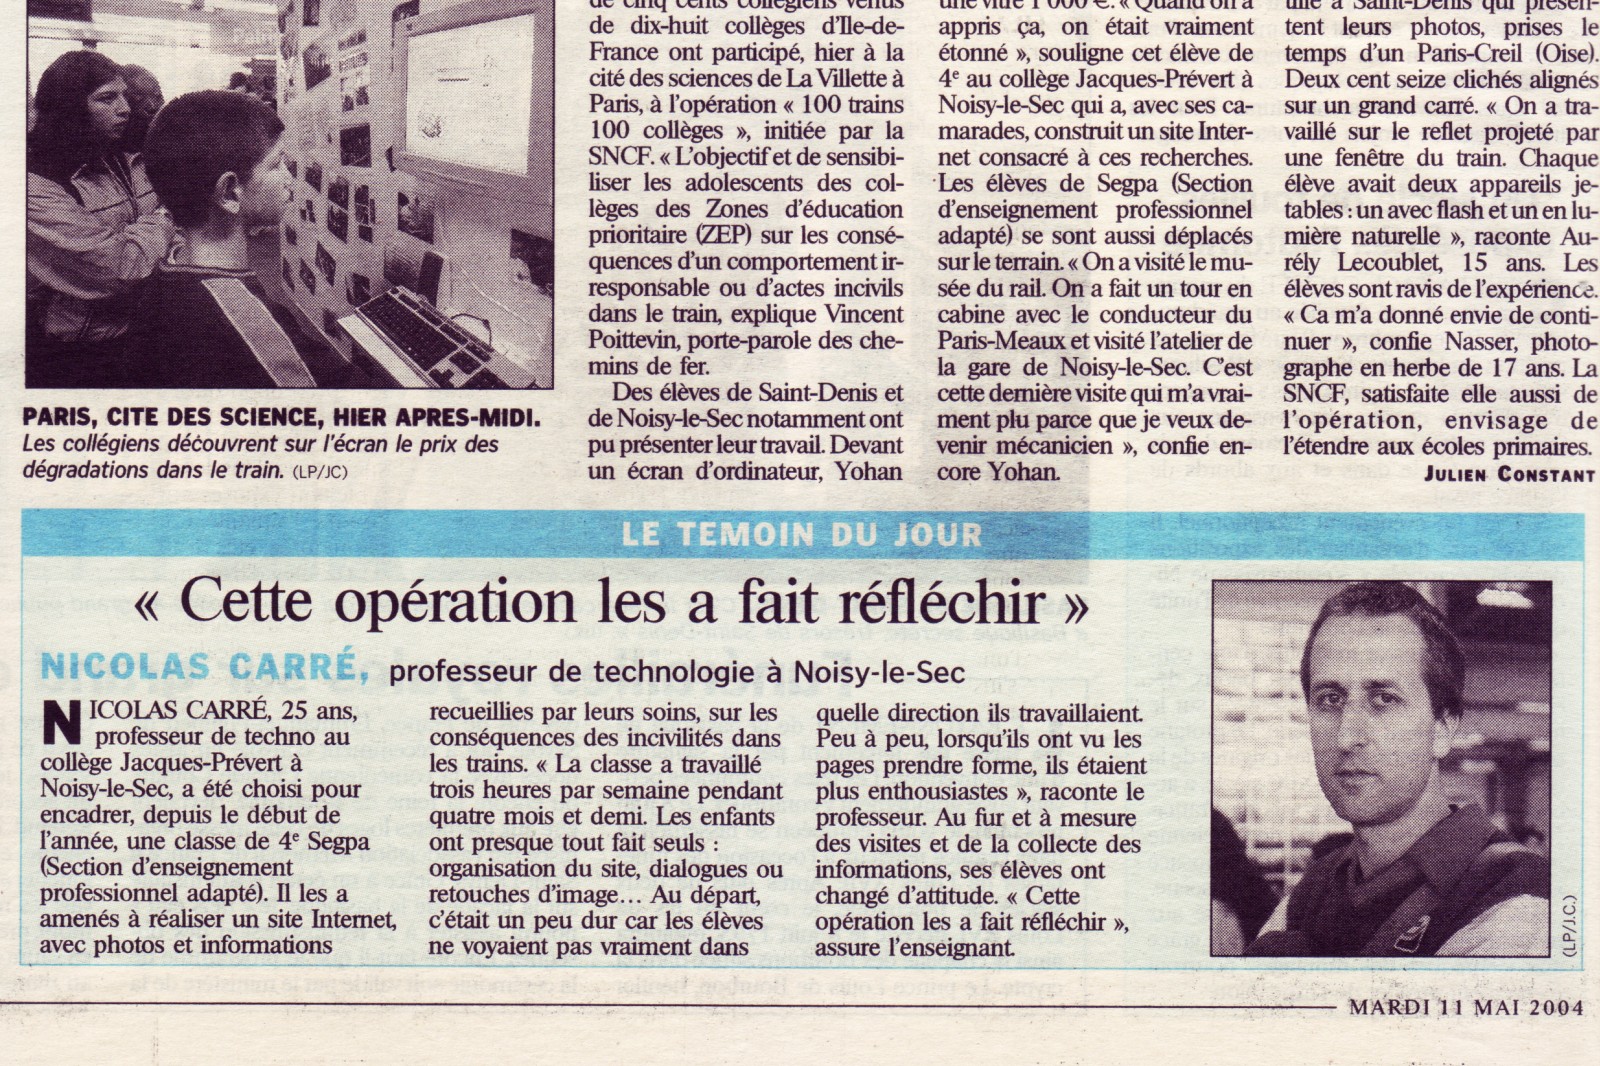 NICOLAS CARRE Le Parisien 11 mai 2004